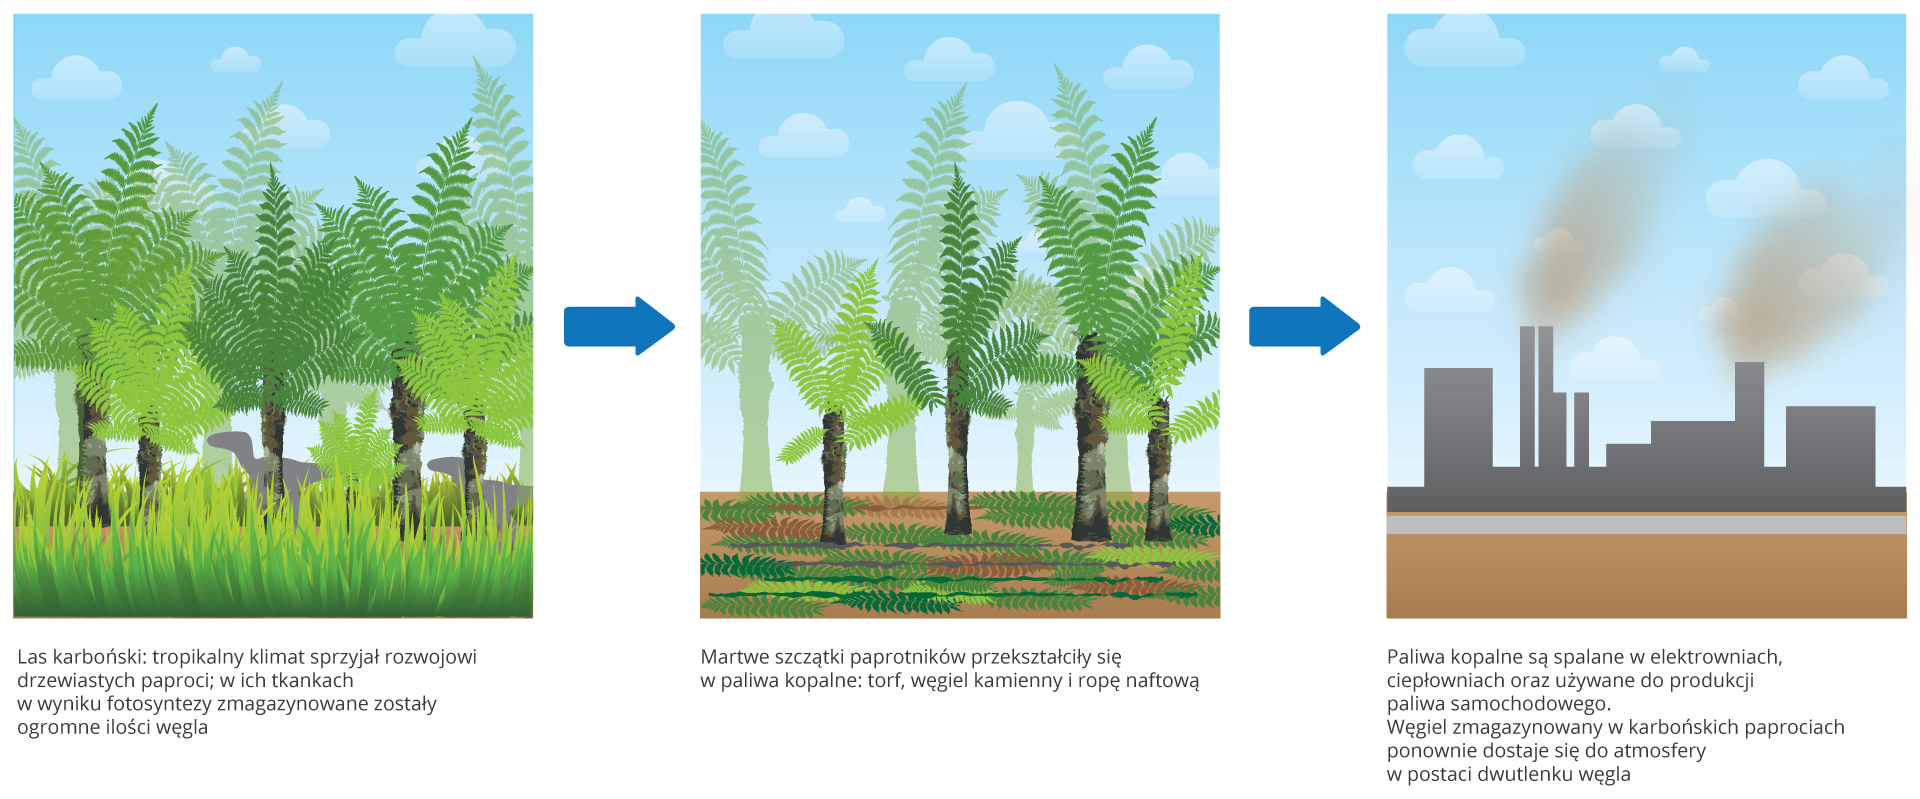 Ilustracja składa się z trzech rysunków, ukazujących magazynowanie i uwalnianie dwutlenku węgla. Na pierwszym obrazku znajdują się zielone drzewiaste paprocie, między którymi w wysokiej trawie chodzą szare dinozaury. To las karboński. Rośliny w ciepłym klimacie pobierają dwutlenek węgla z atmosfery i prowadzą intensywną fotosyntezę. W ich tkankach magazynowane są duże ilości węgla. * Drugi rysunek ukazuje tylko kilka żywych roślin. Szczątki pozostałych powoli przekształcają się w paliwa kopalne: torf, węgiel brunatny i kamienny oraz ropę naftową. Na trzecim rysunku znajduje się szara fabryka. Z jej kominów wydostaje się bury dym. Paliwa kopalne są zużywane, a zmagazynowany węgiel w postaci dwutlenku węgla wraca do atmosfery.